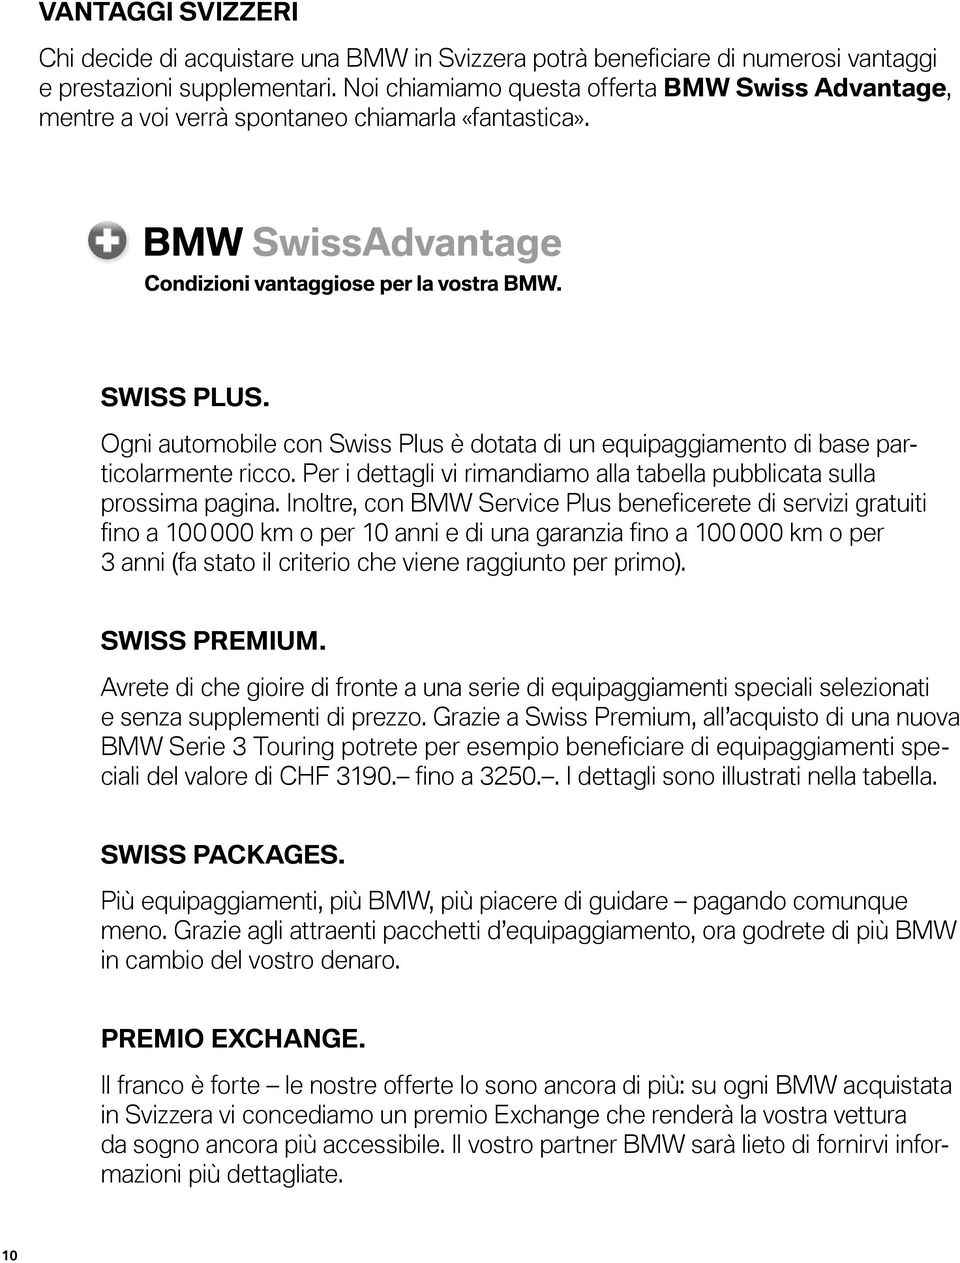 Ogni automobile con Swiss Plus è dotata di un equipaggiamento di base particolarmente ricco. Per i dettagli vi rimandiamo alla tabella pubblicata sulla prossima pagina.